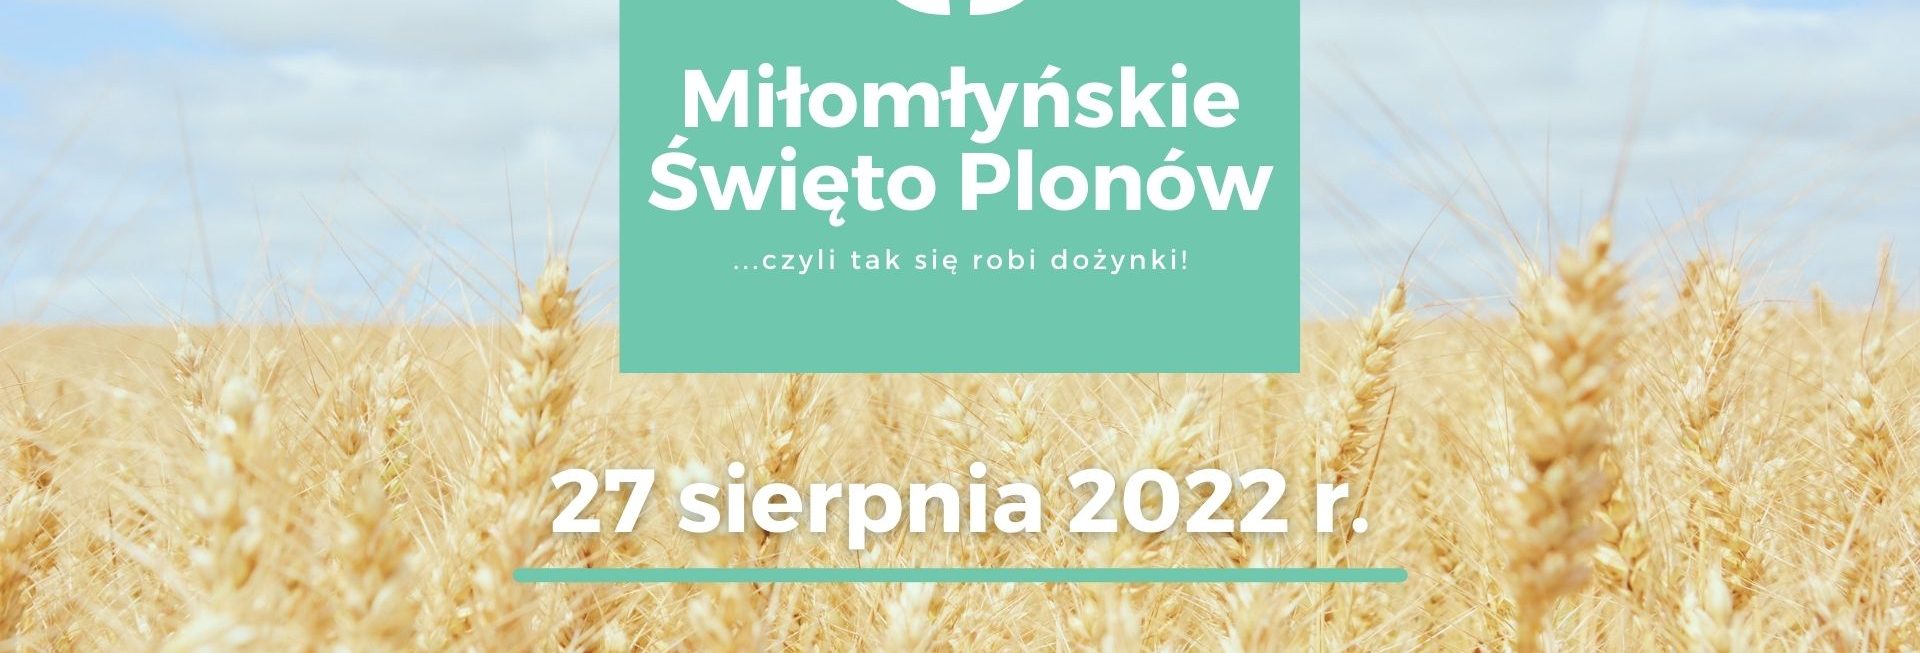 Plakat zapraszający do Miłomłyna na Dożynki Gminne Miłomłyńskie Święto Plonów Miłomłyn 2022. 